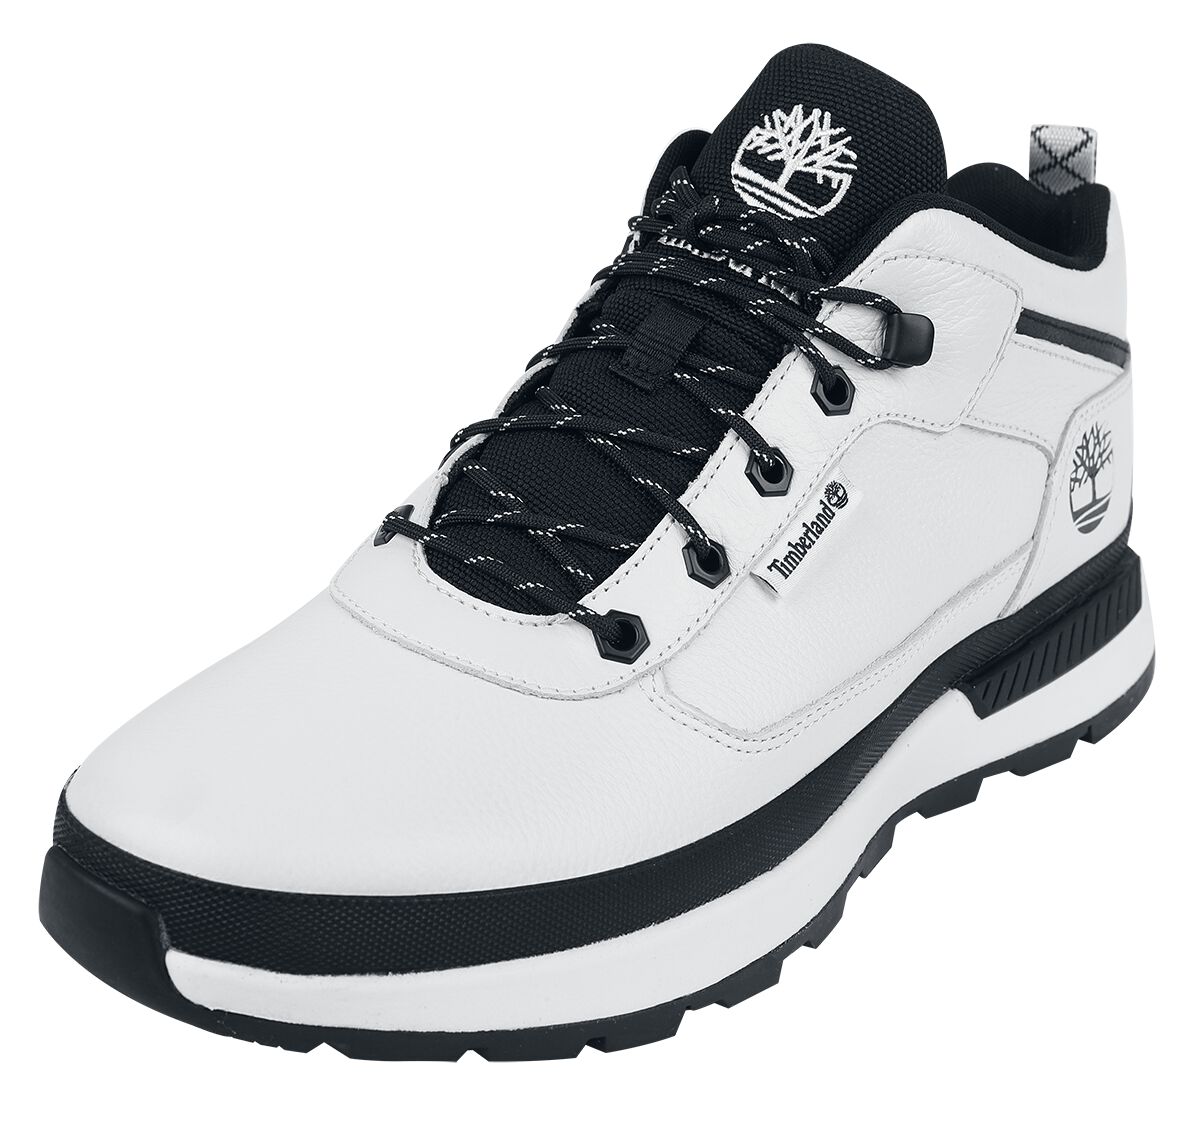 Timberland Sneaker - Field Trekker Mid Lace Up - EU41 bis EU46 - für Männer - Größe EU44 - weiß